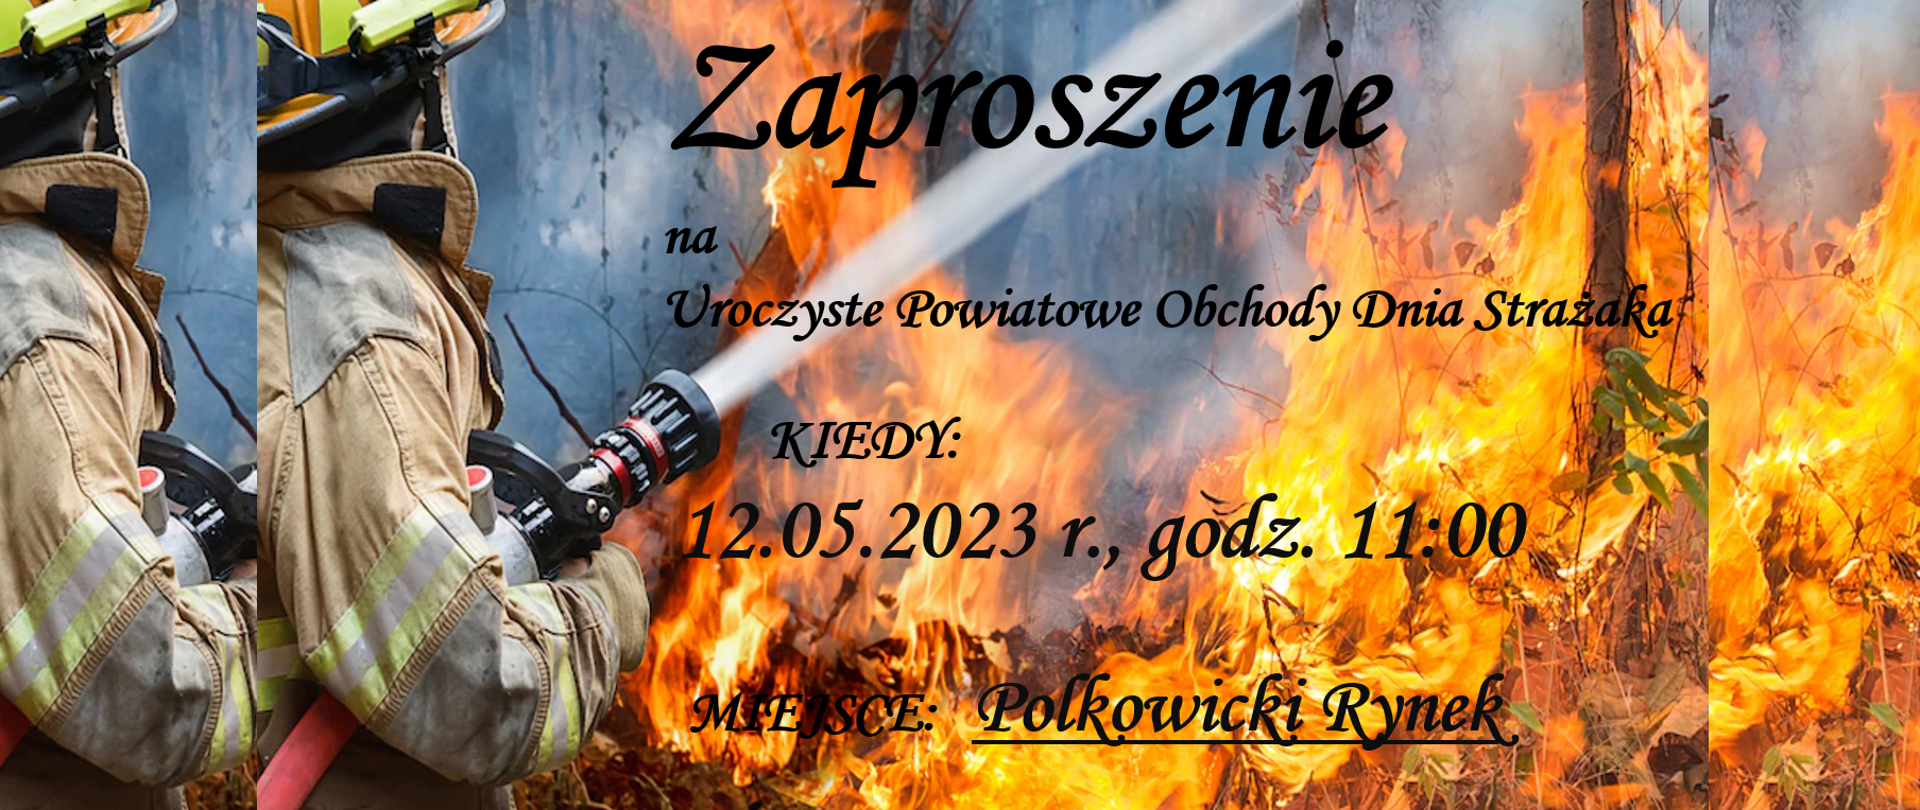 Zaproszenie na Dzień Strażaka 2023 - grafika przedstawia strażaka gaszącego las objęty płomieniami, Zaproszenie na uroczyste obchody dnia Strażaka w Polkowickim Rynku 12.05.2023 roku o 11:00